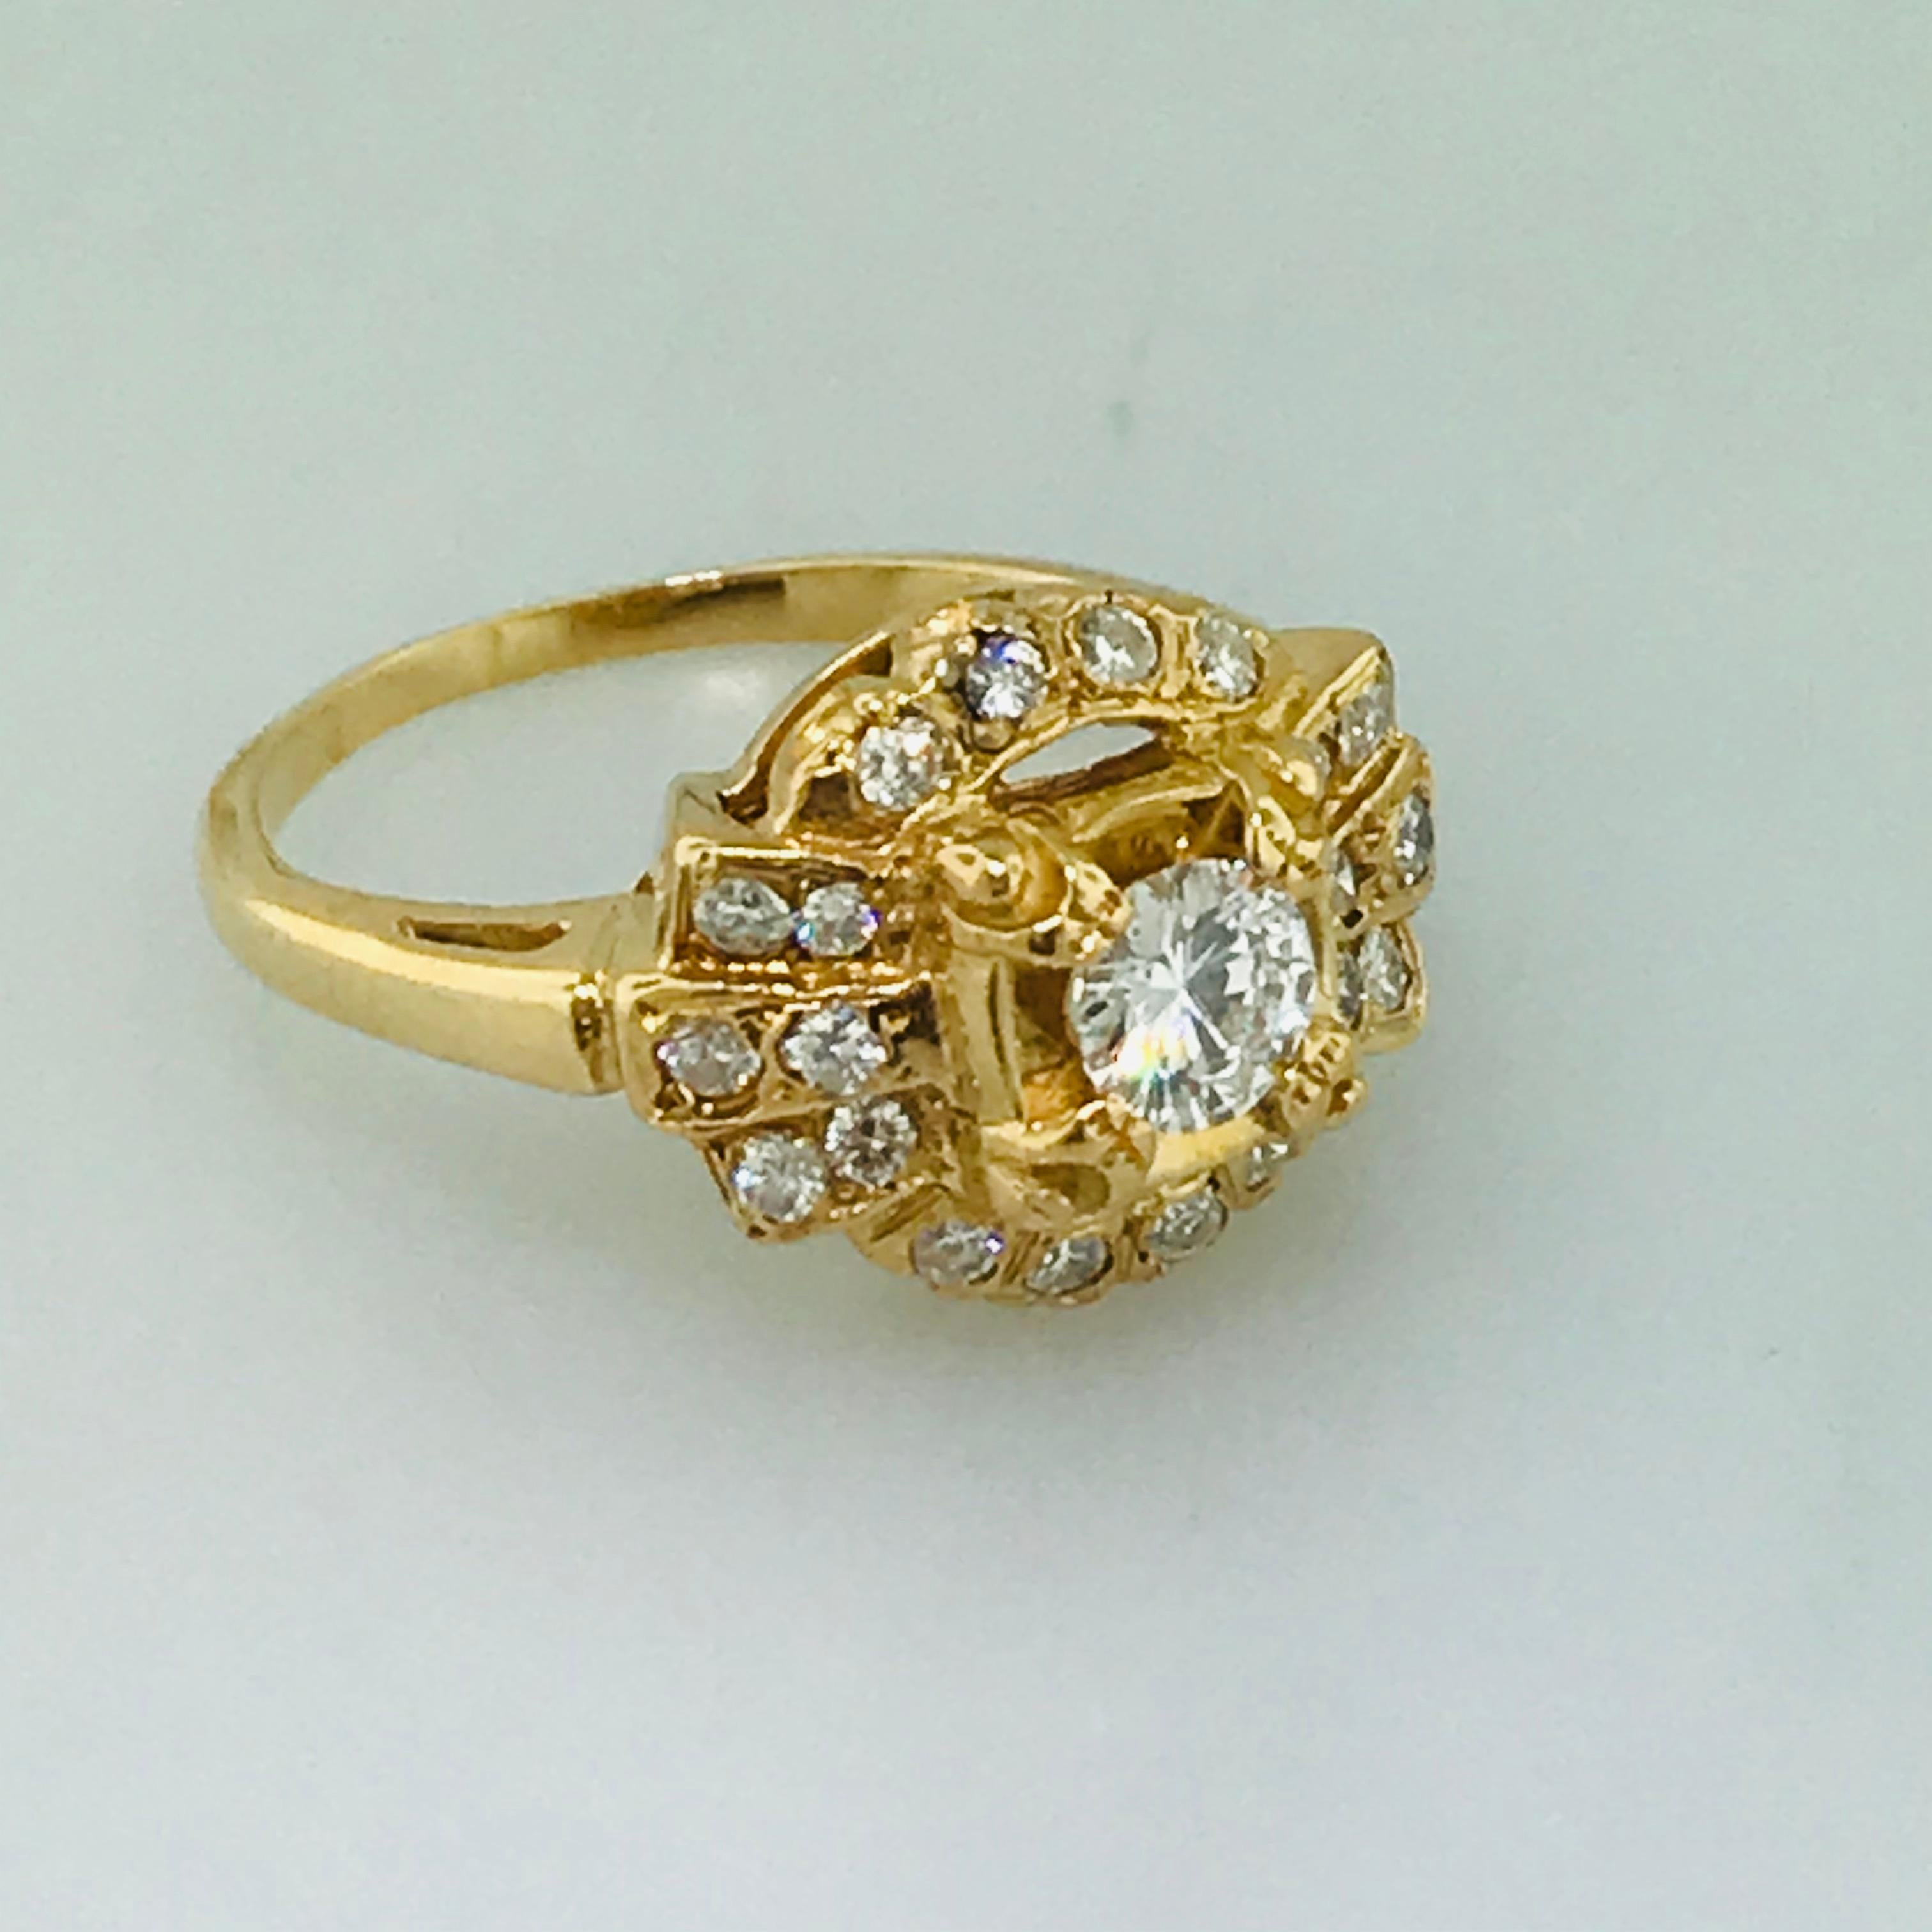 Women's 1.00 Carat Diamond Vintage Estate Ring in 14 Karat Yellow Gold, circa 1935